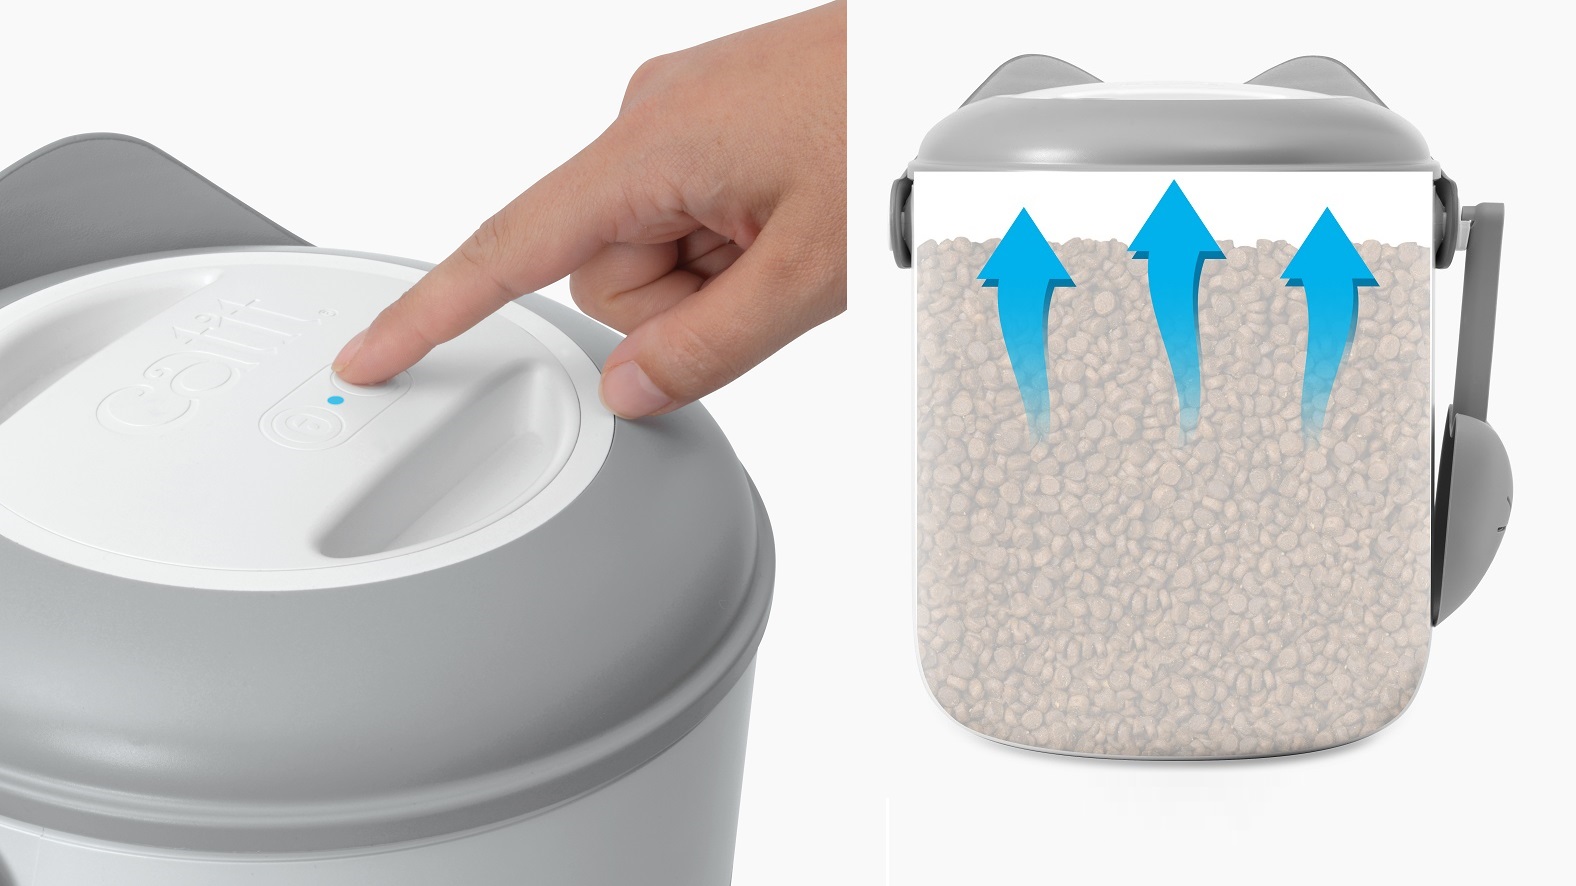 Catit Pixi Smart Vacuum Food Container